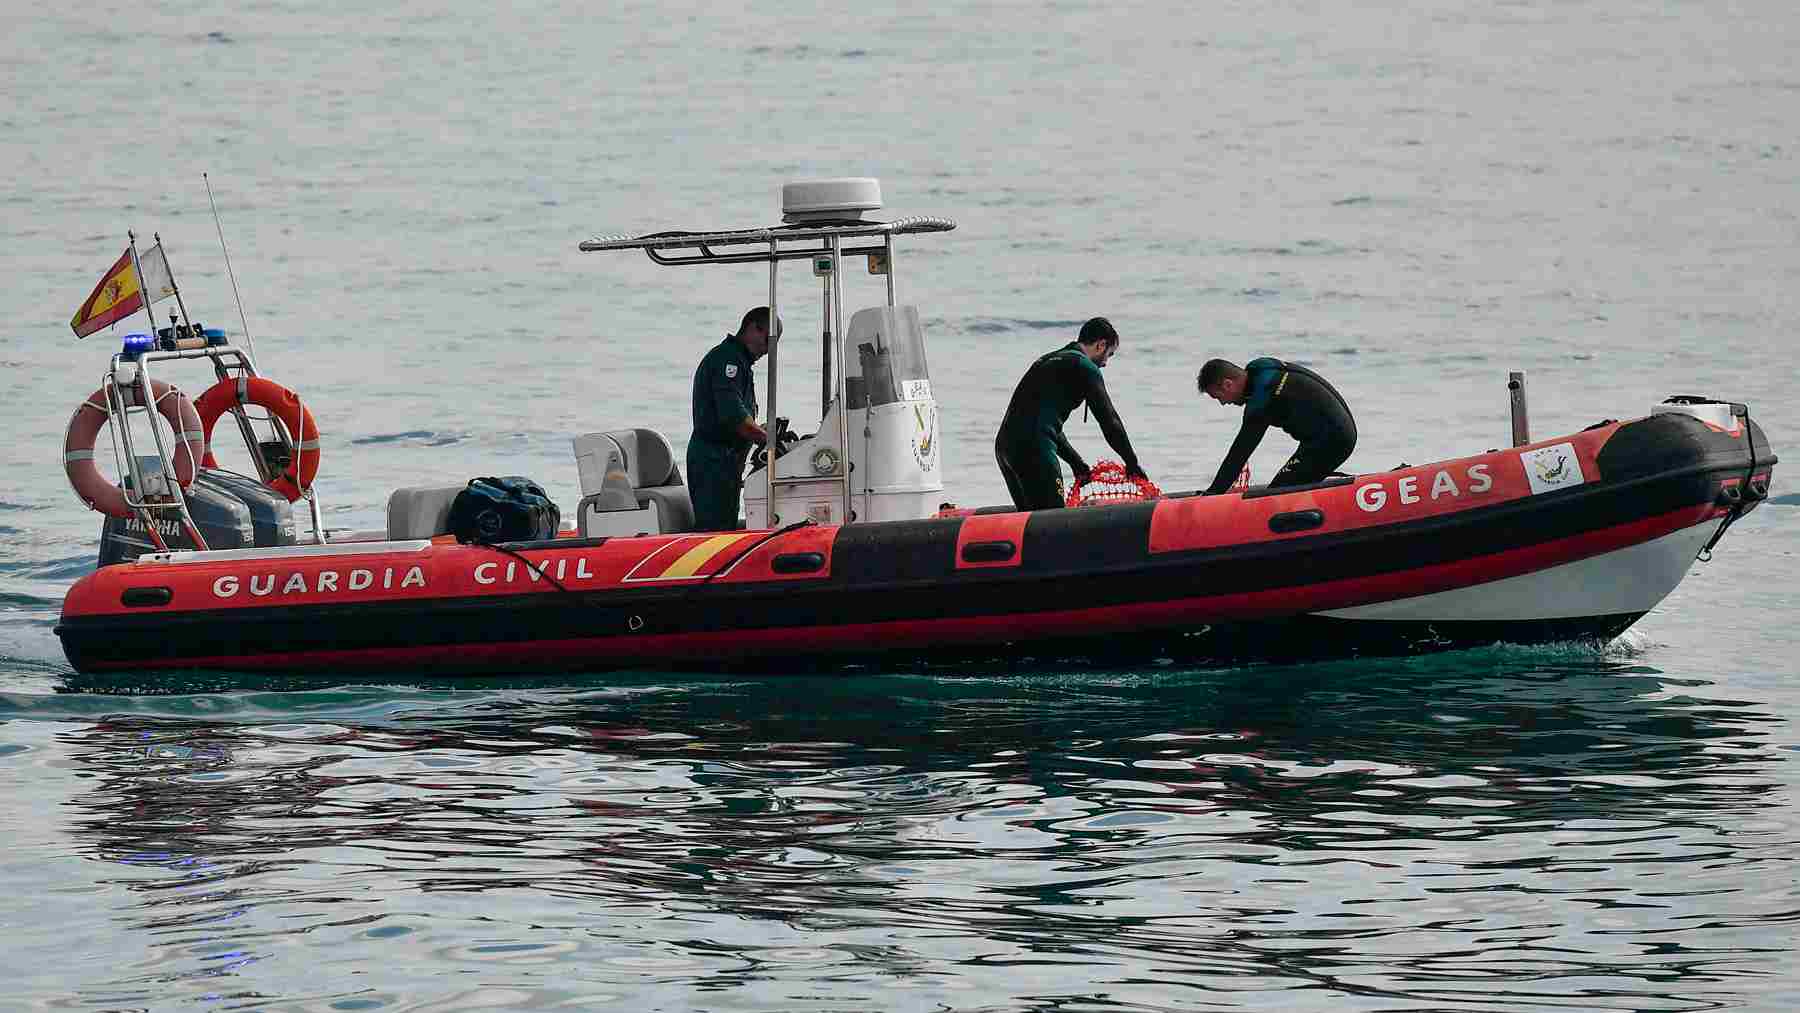 GEAS de la Guardia Civil han recuperado del mar un cadáver hallado flotando frente a la Catedral de Palma. EFE/MIQUEL A. BORRÀS